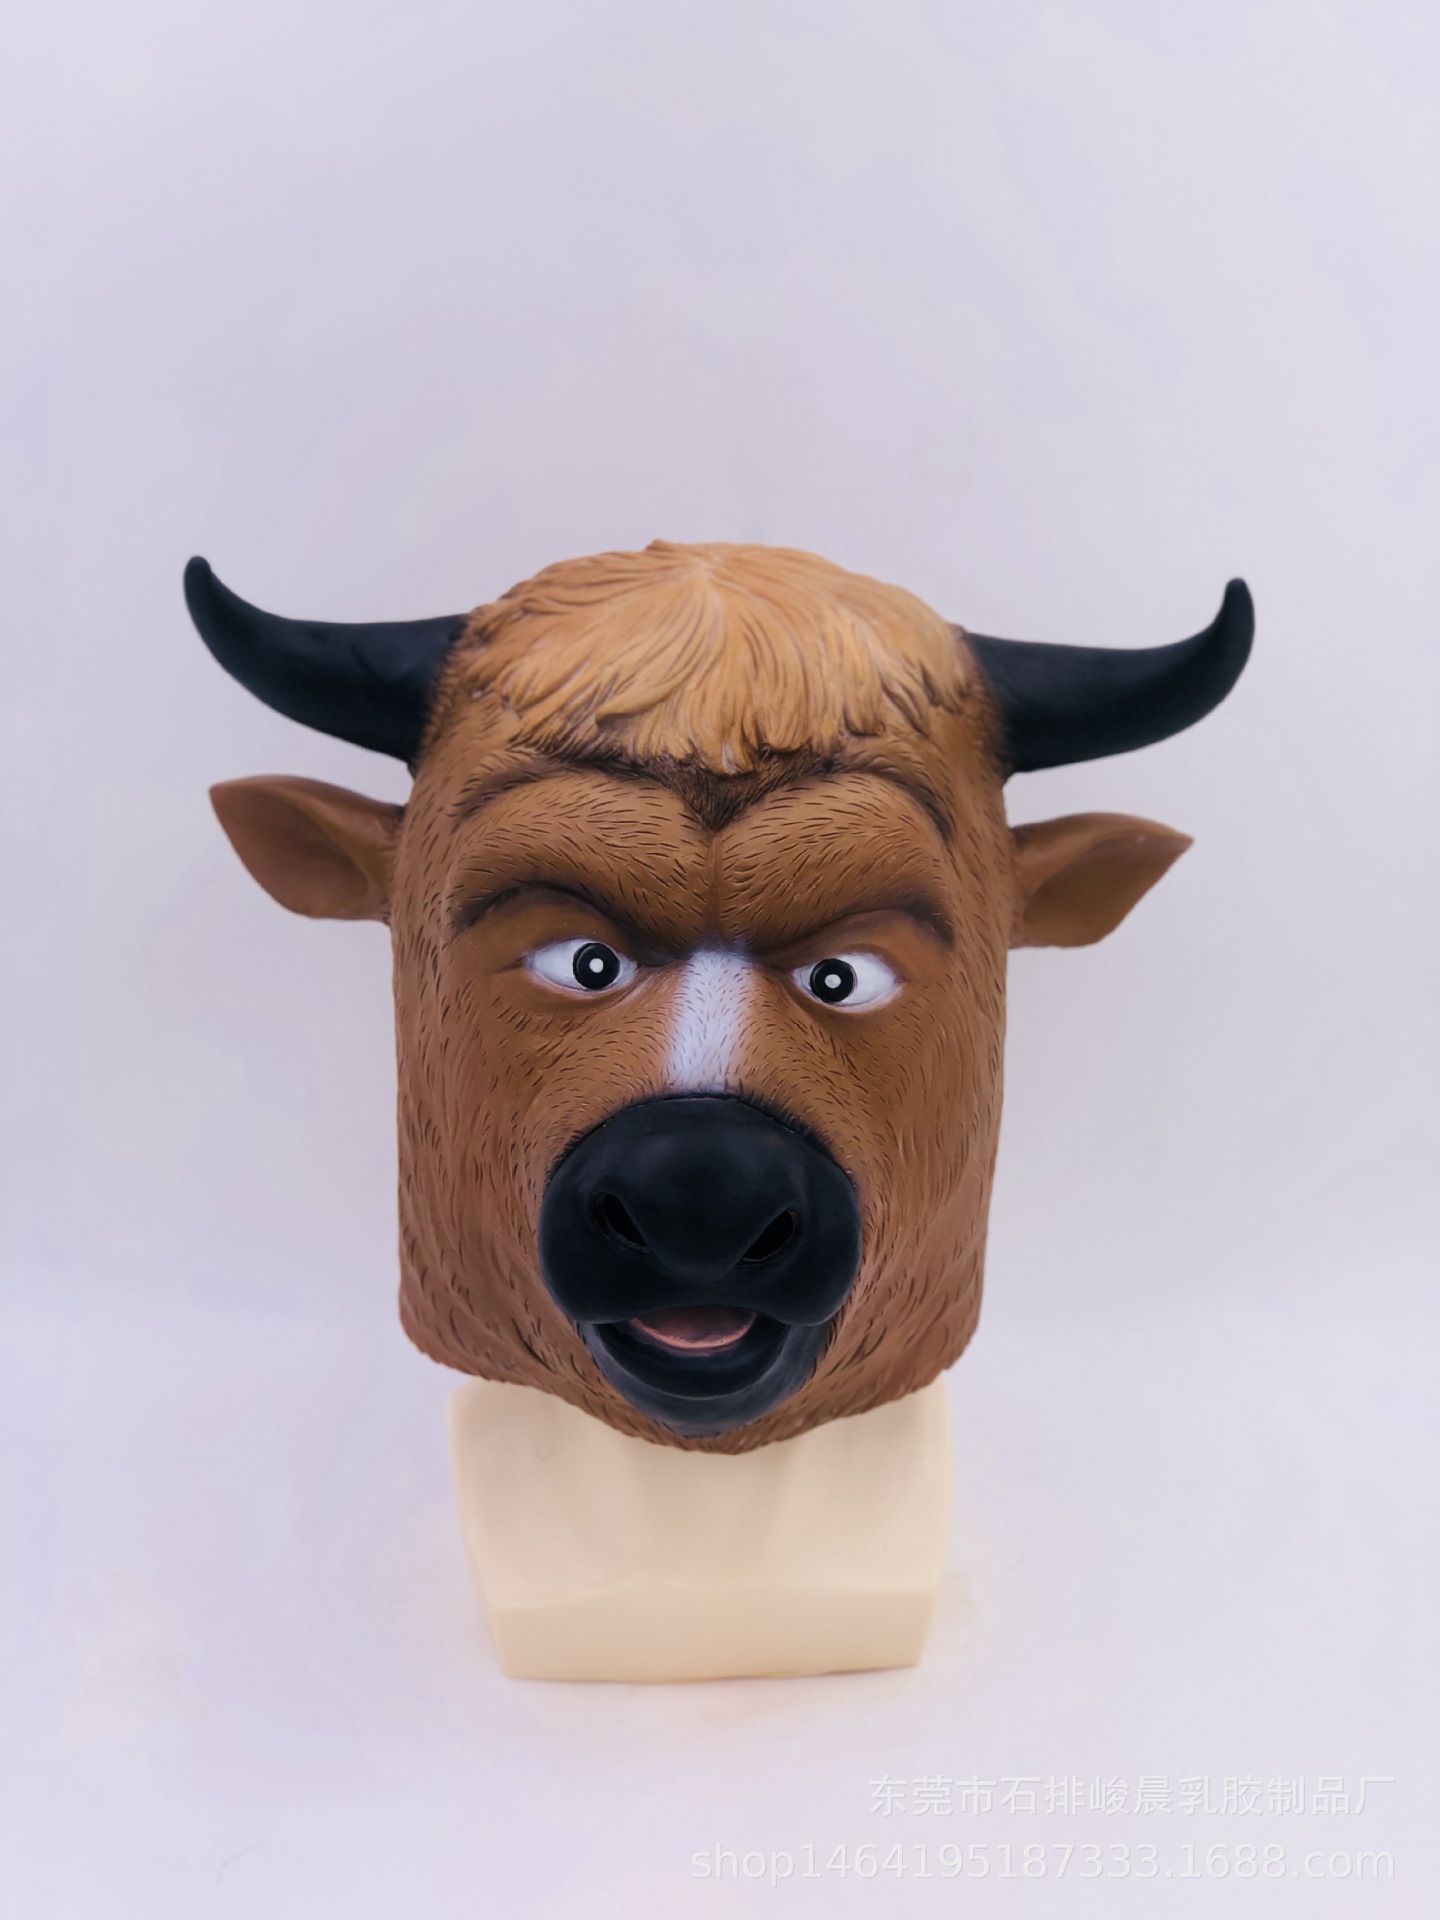 牛面具头套电影西游记同款 面具动物牛头乳胶面具厂家一手货源